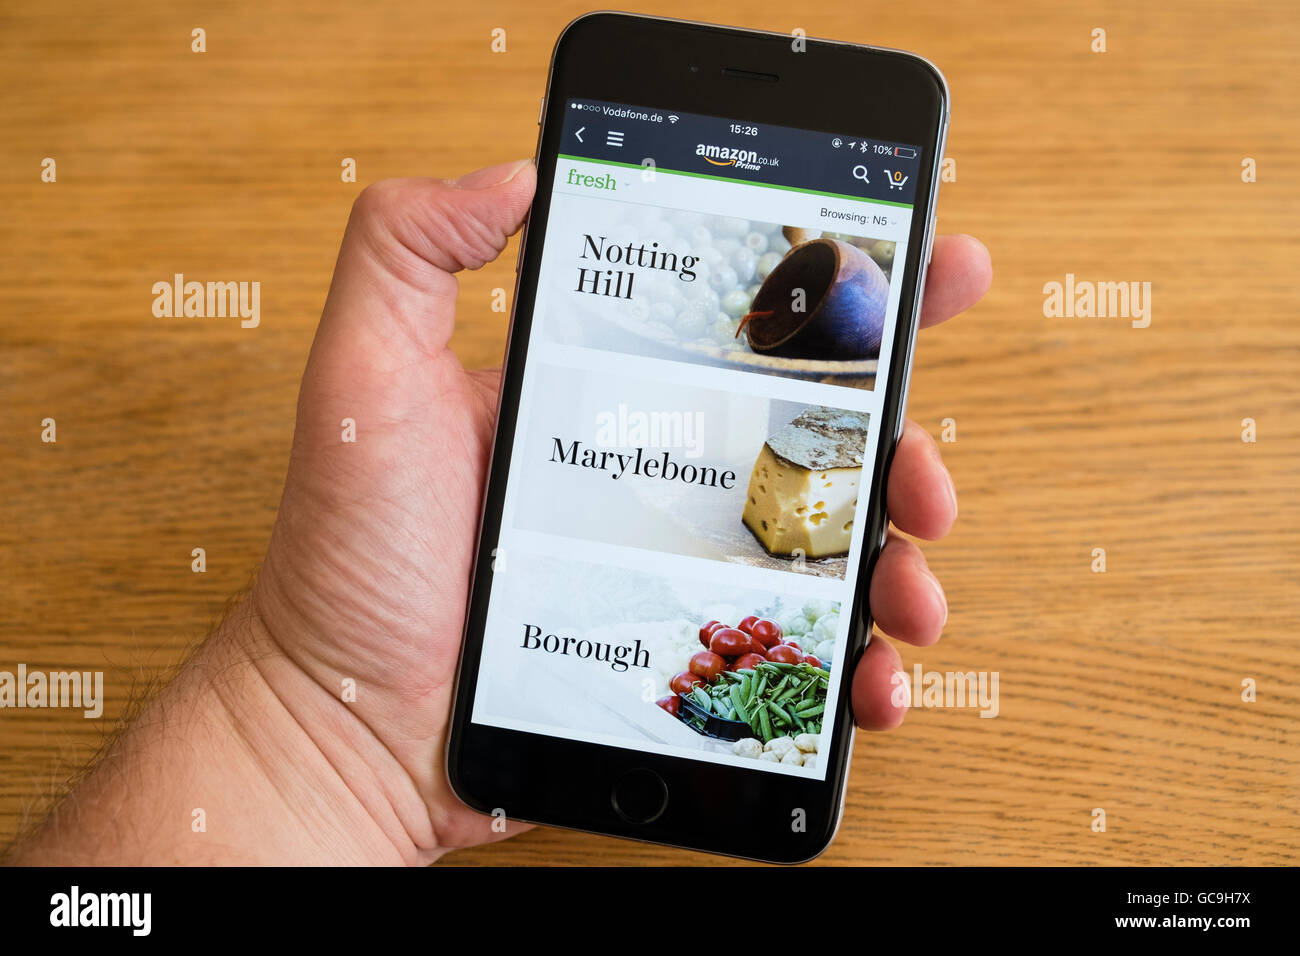 Amazon Premier aliment frais livraison app indiqué sur un iPhone 6 smart phone Banque D'Images